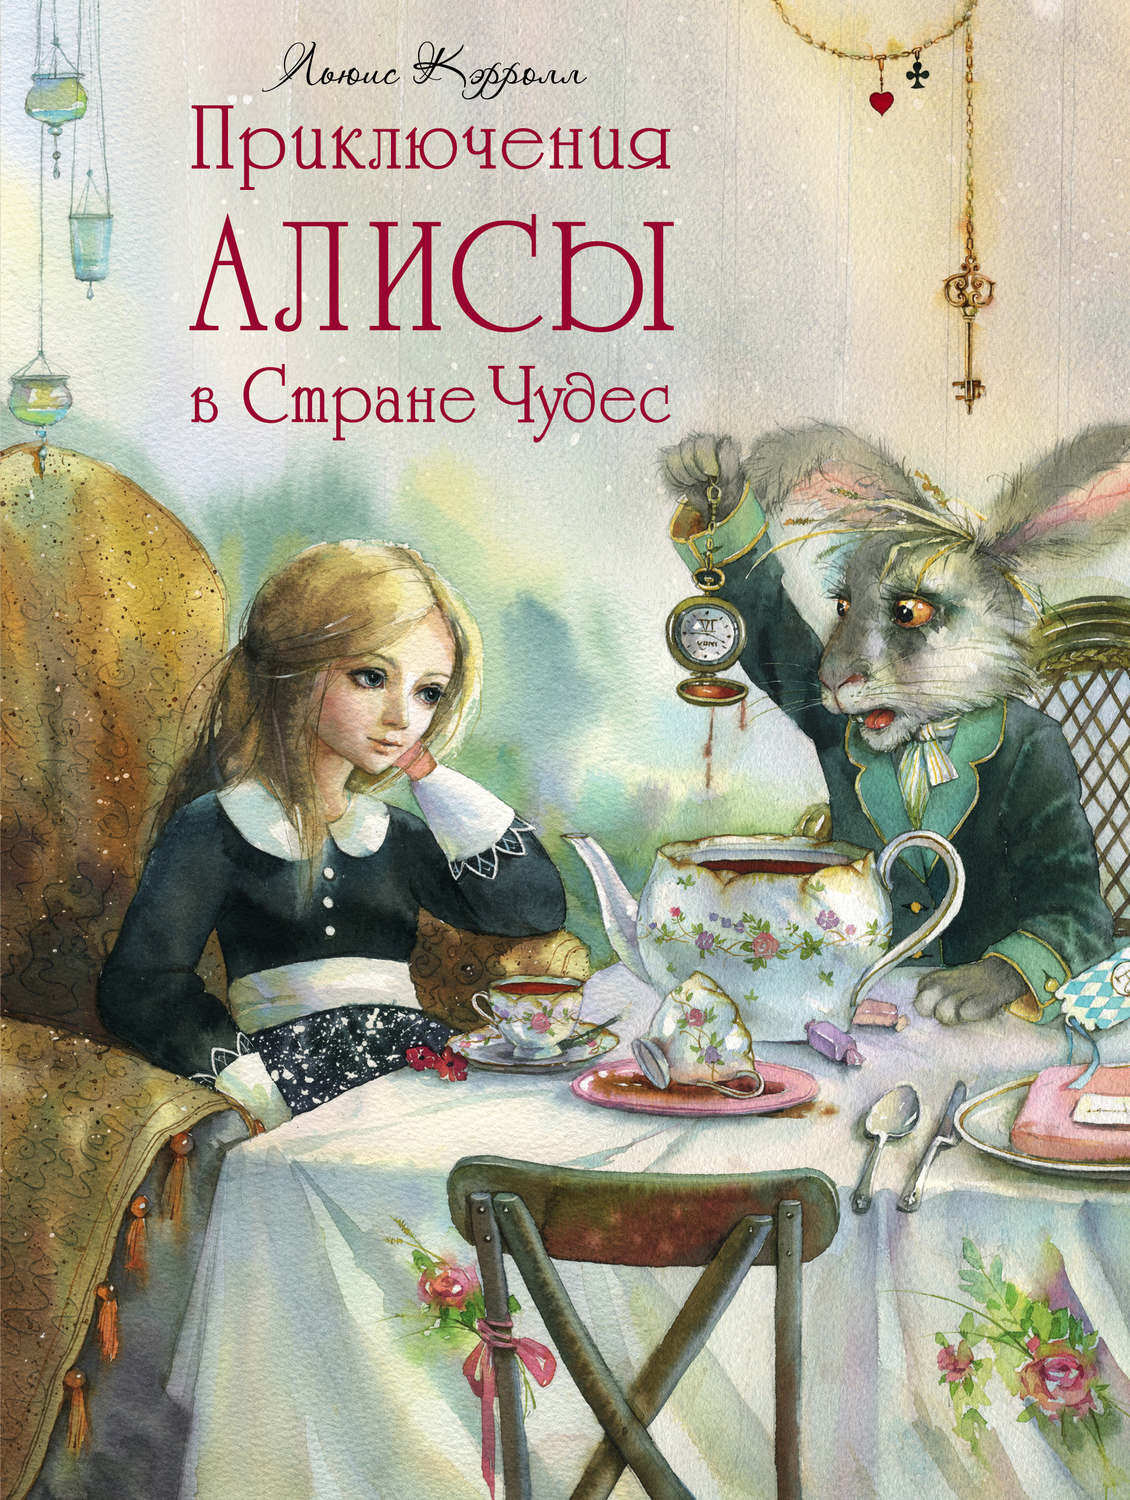 Алиса в стране чудес книга автор. Кэрролл "Алиса в стране чудес". Льюис Кэрролл приключения Алисы в стране чудес. Алиса в стране чудес Кэролл. Алиса в стране чудес обложка книги.